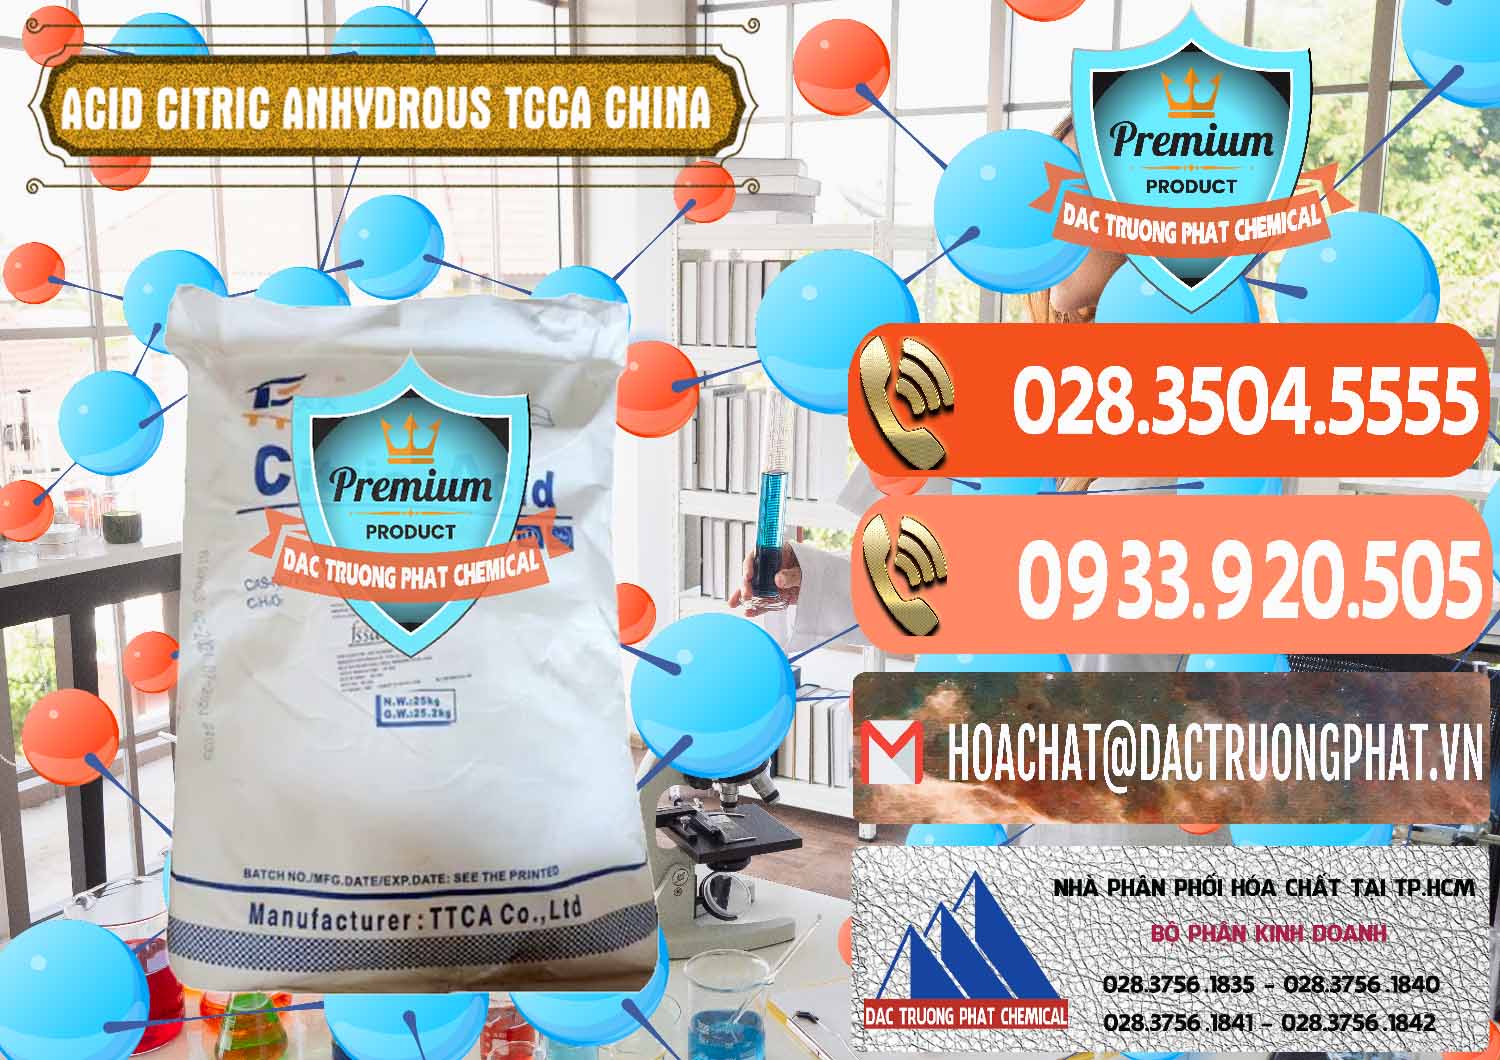 Chuyên cung cấp & bán Acid Citric - Axit Citric Anhydrous TCCA Trung Quốc China - 0442 - Nơi chuyên bán & cung cấp hóa chất tại TP.HCM - hoachatmientay.com